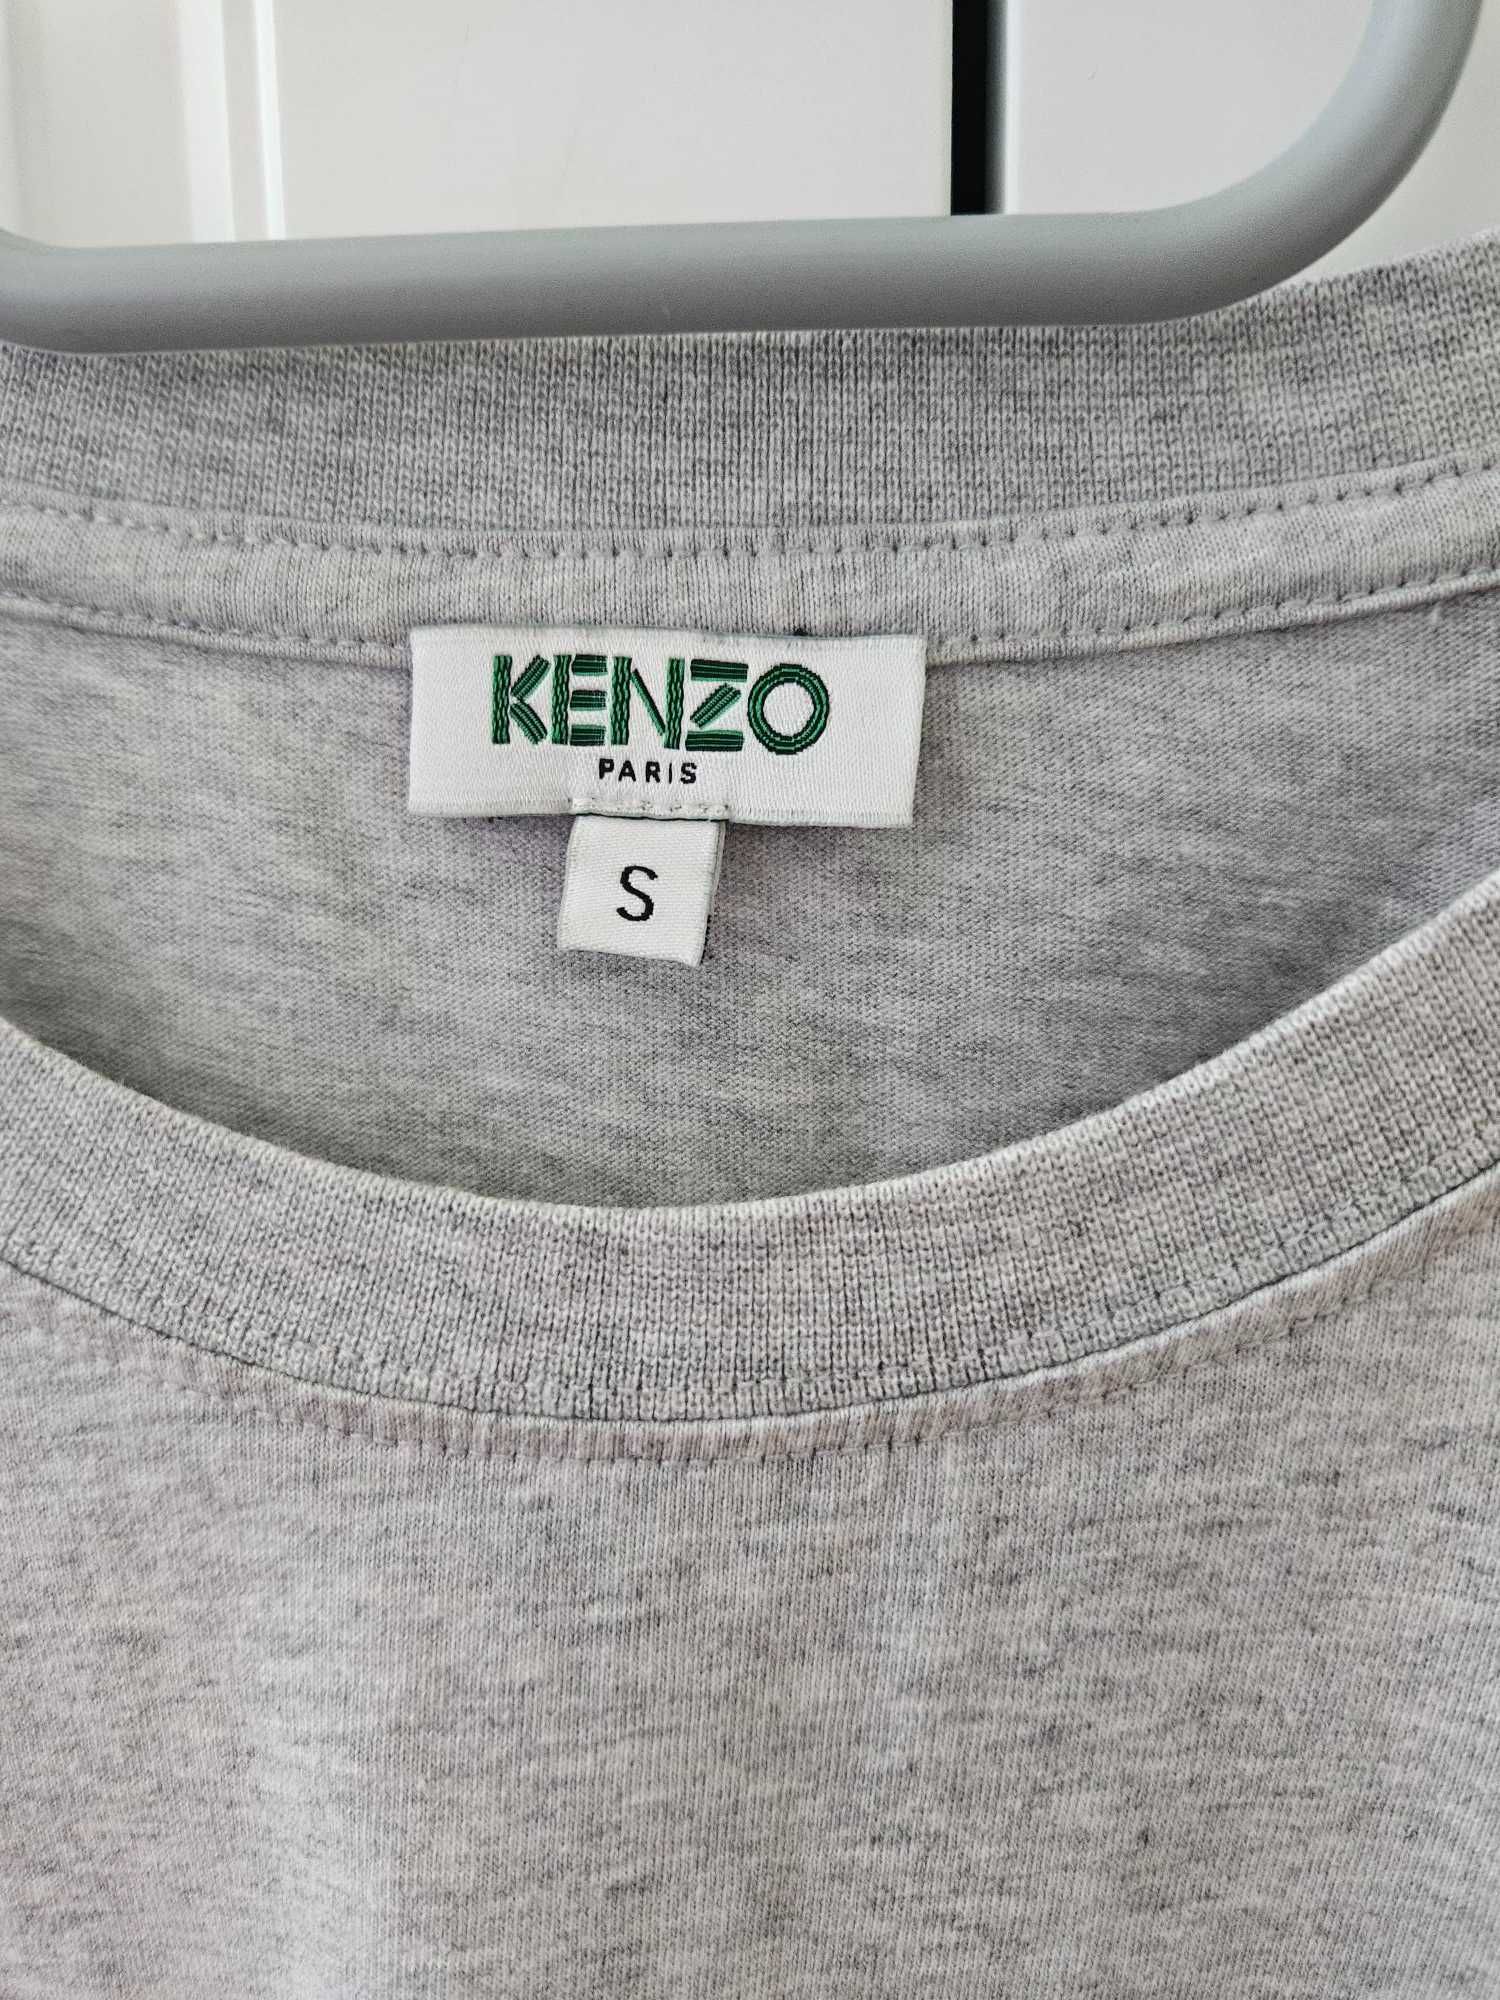 Klasyczny T-shirt marki KENZO szary S